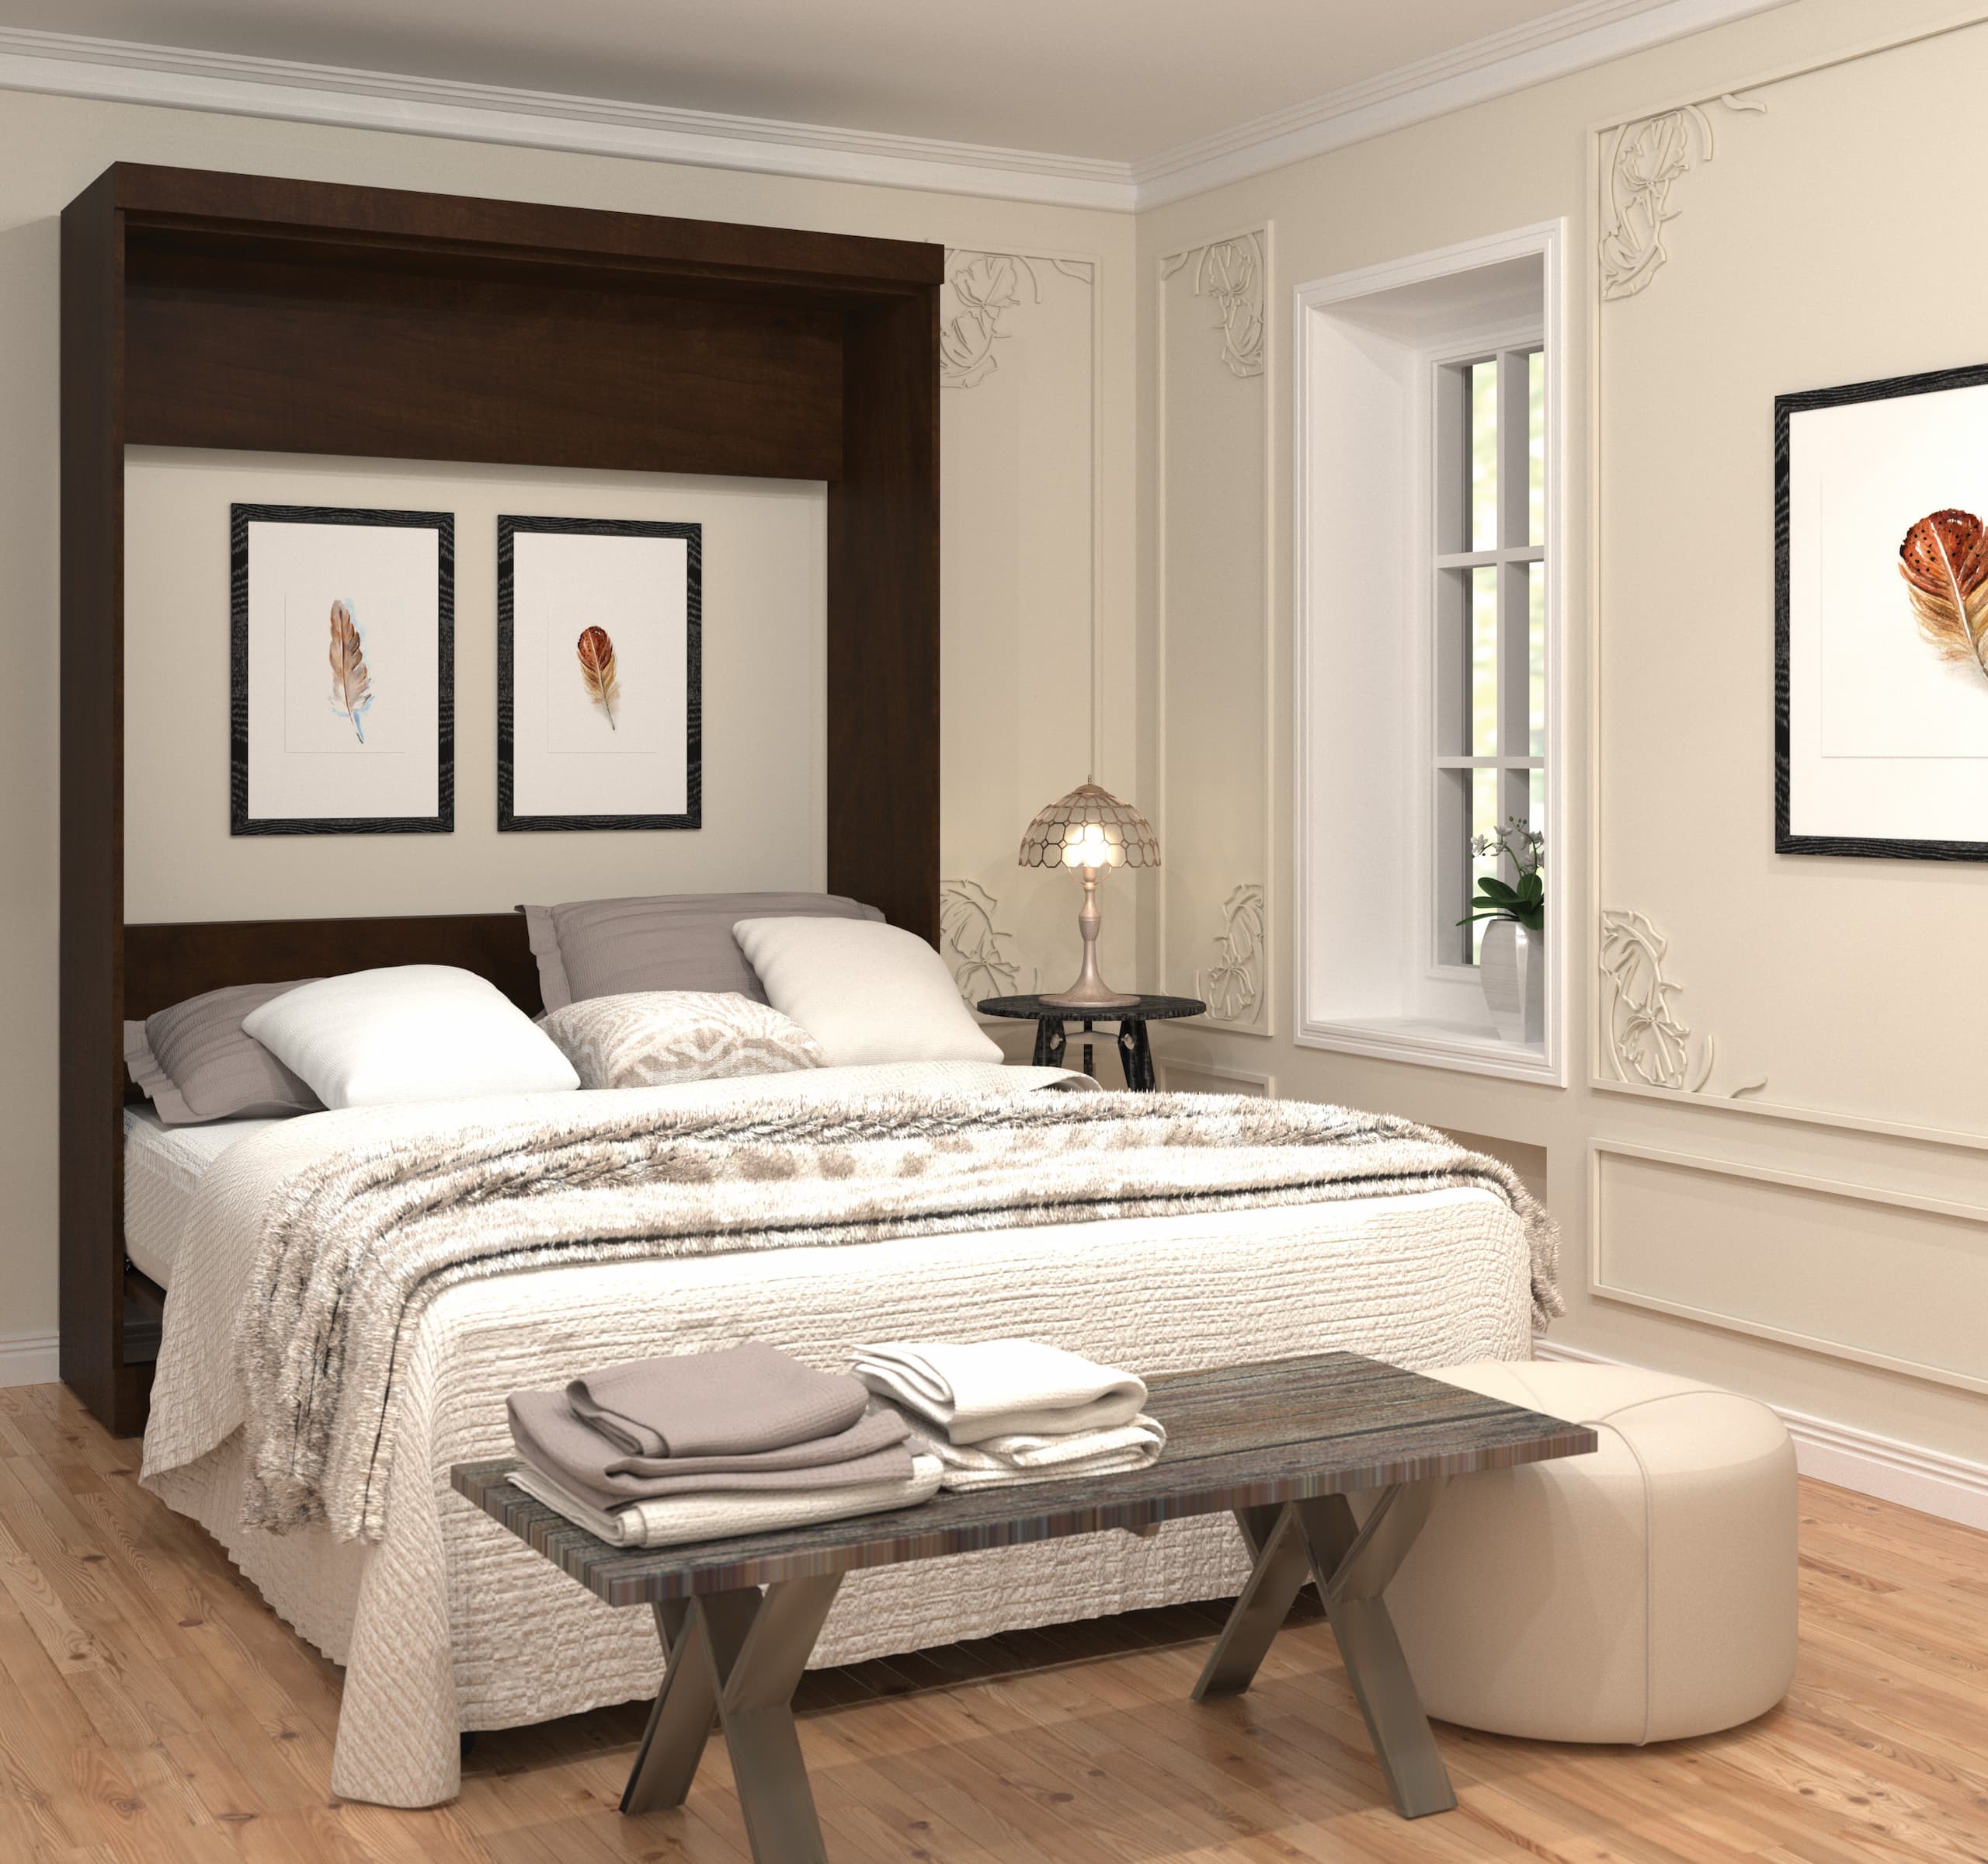 Elegant Murphy bed in a guest bedroom